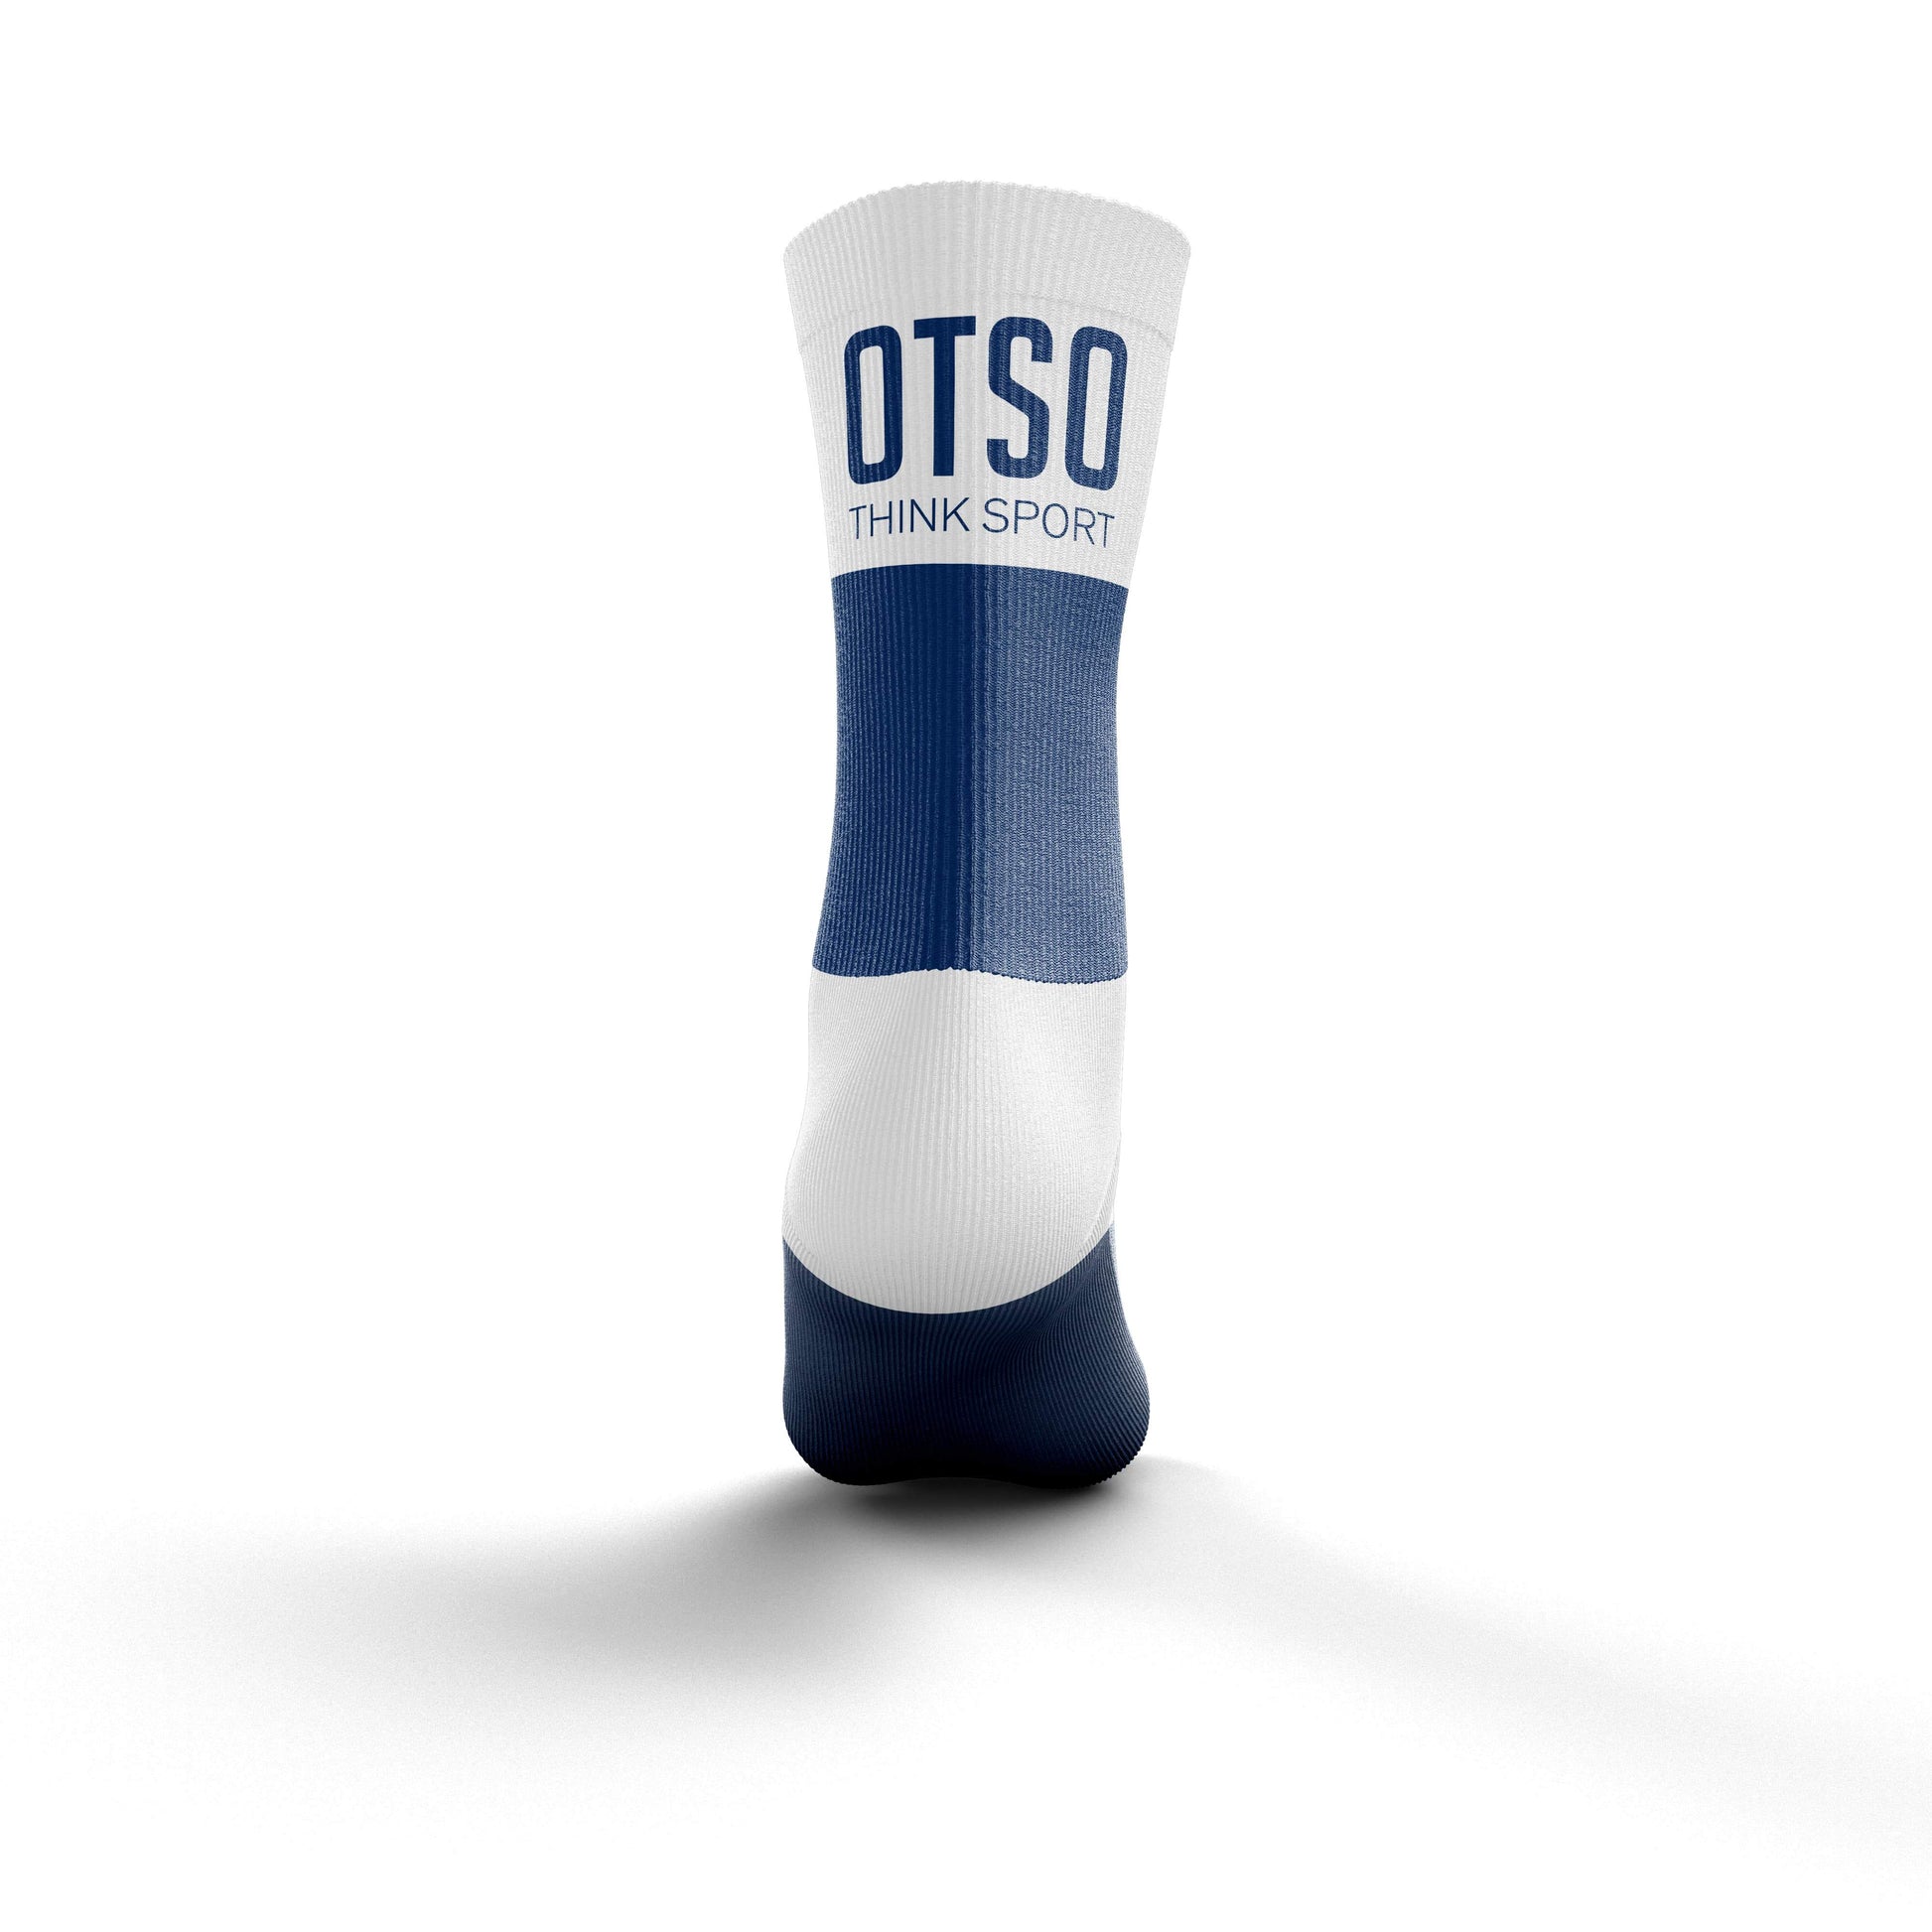 Calcetines de media altura de la marca Otso de color azul y blanco. Foto trasera